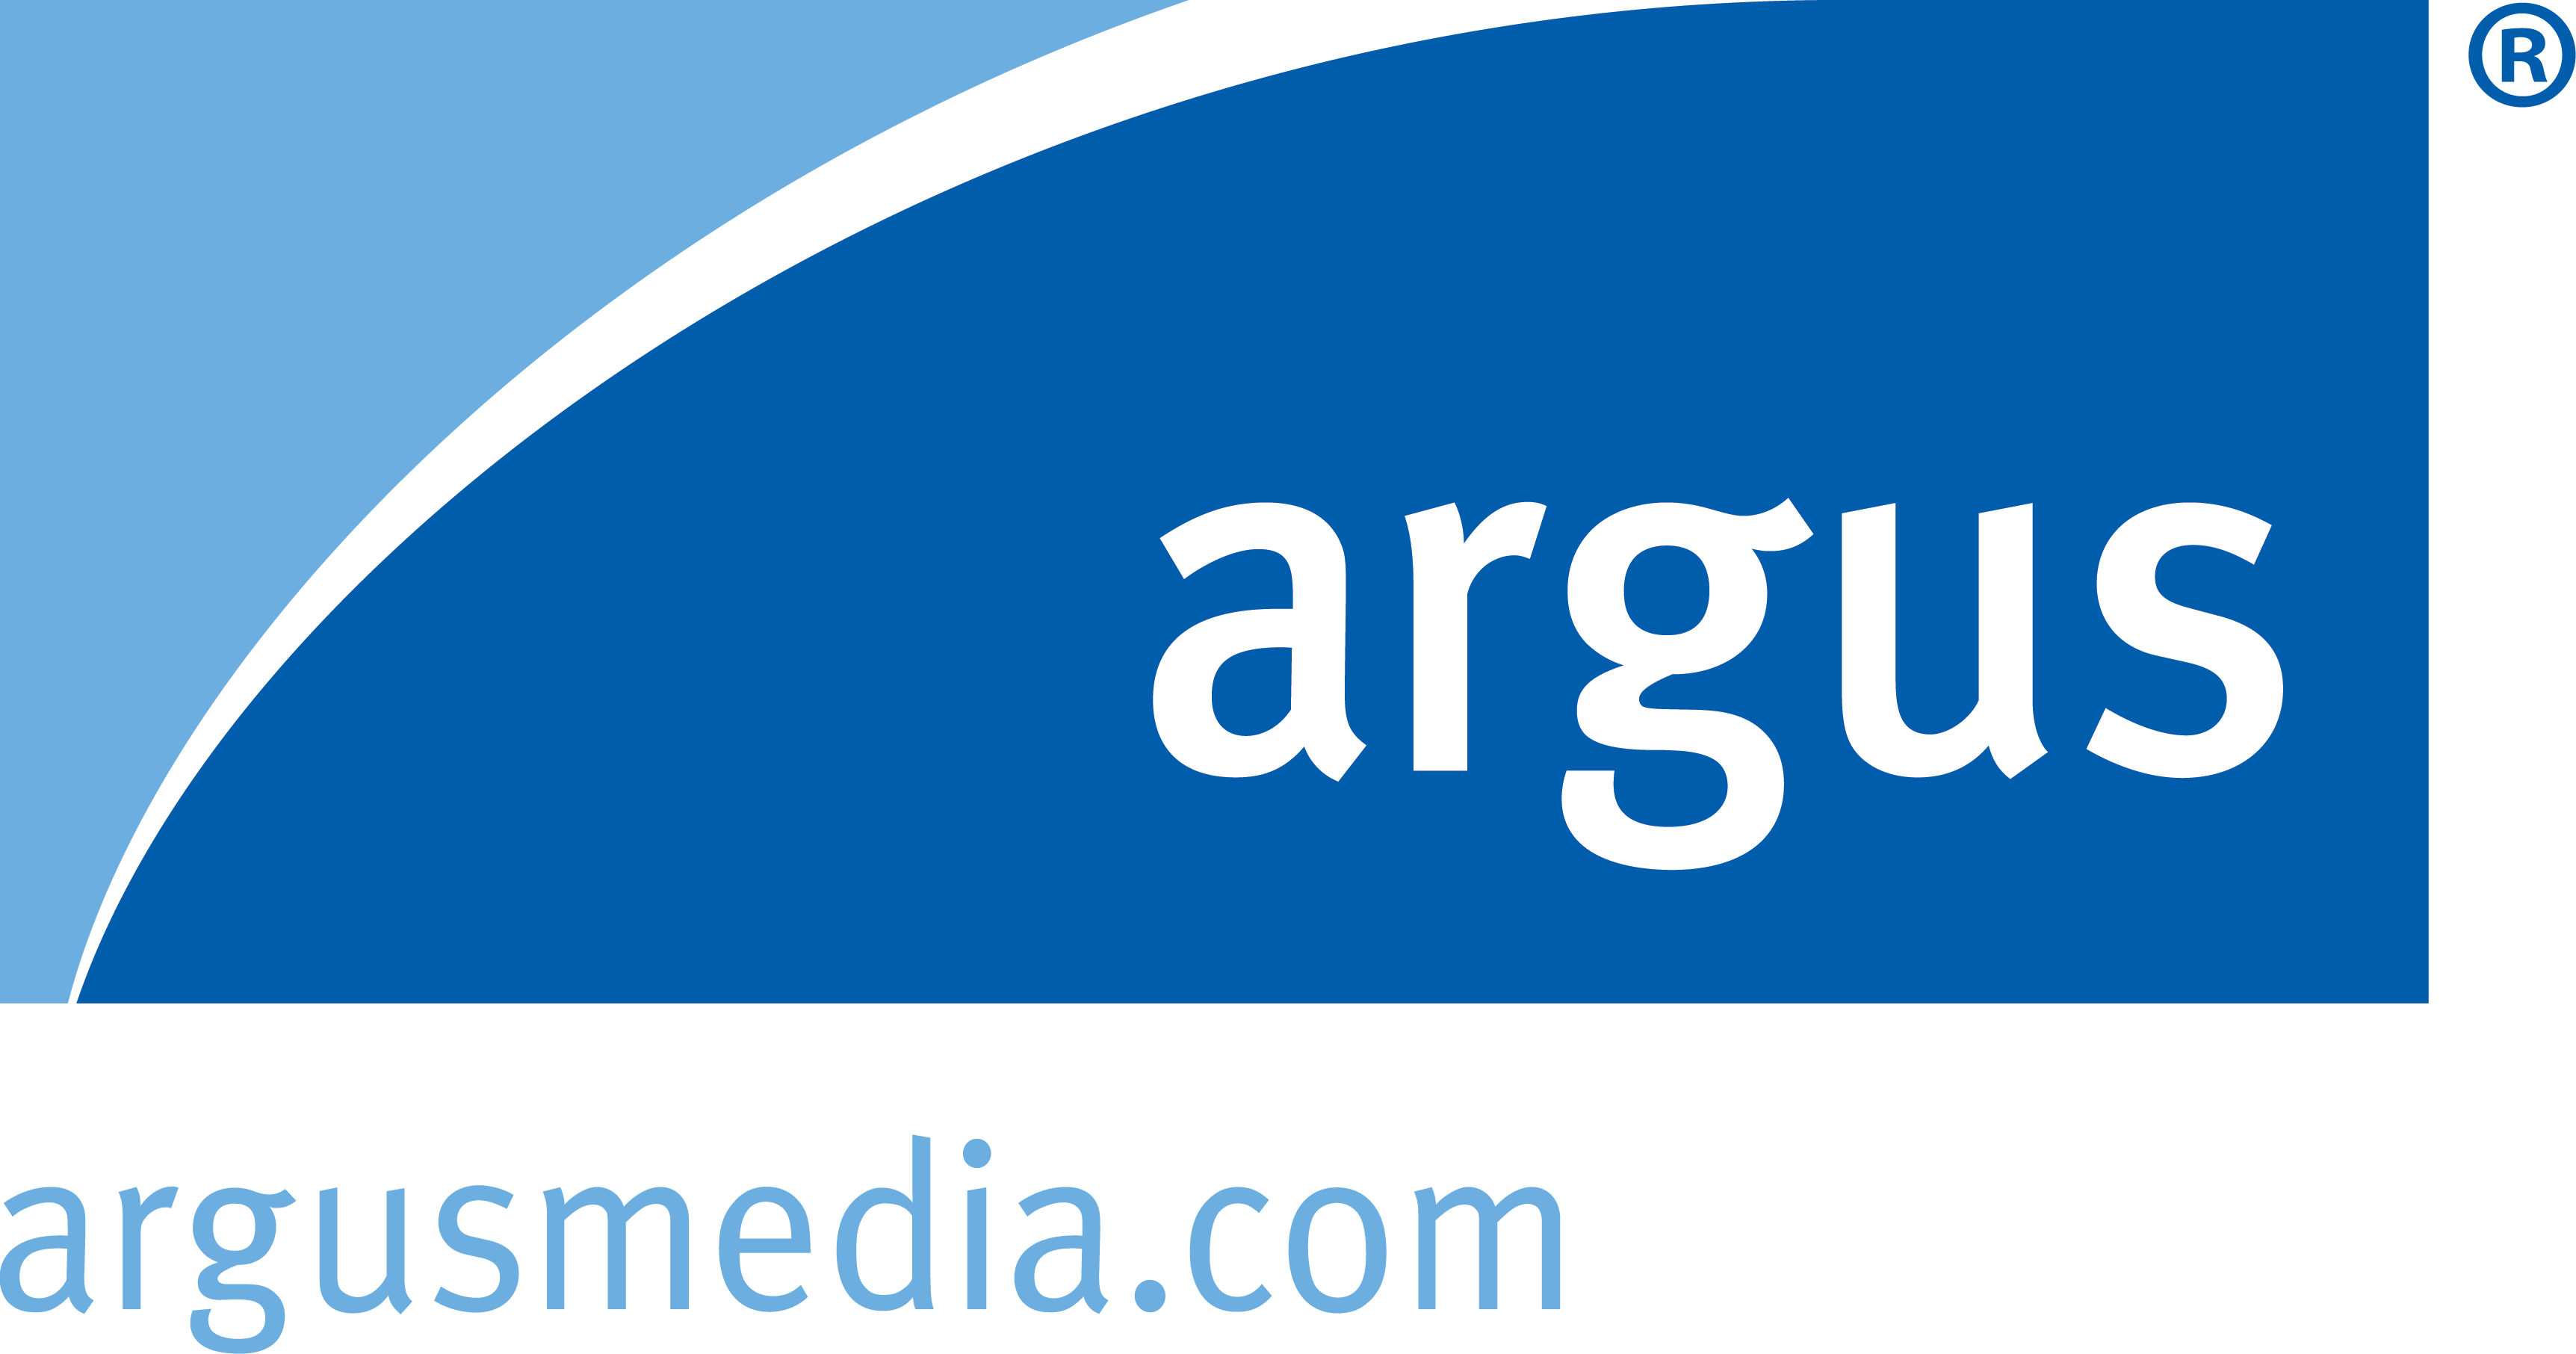 Argus logo blue url left